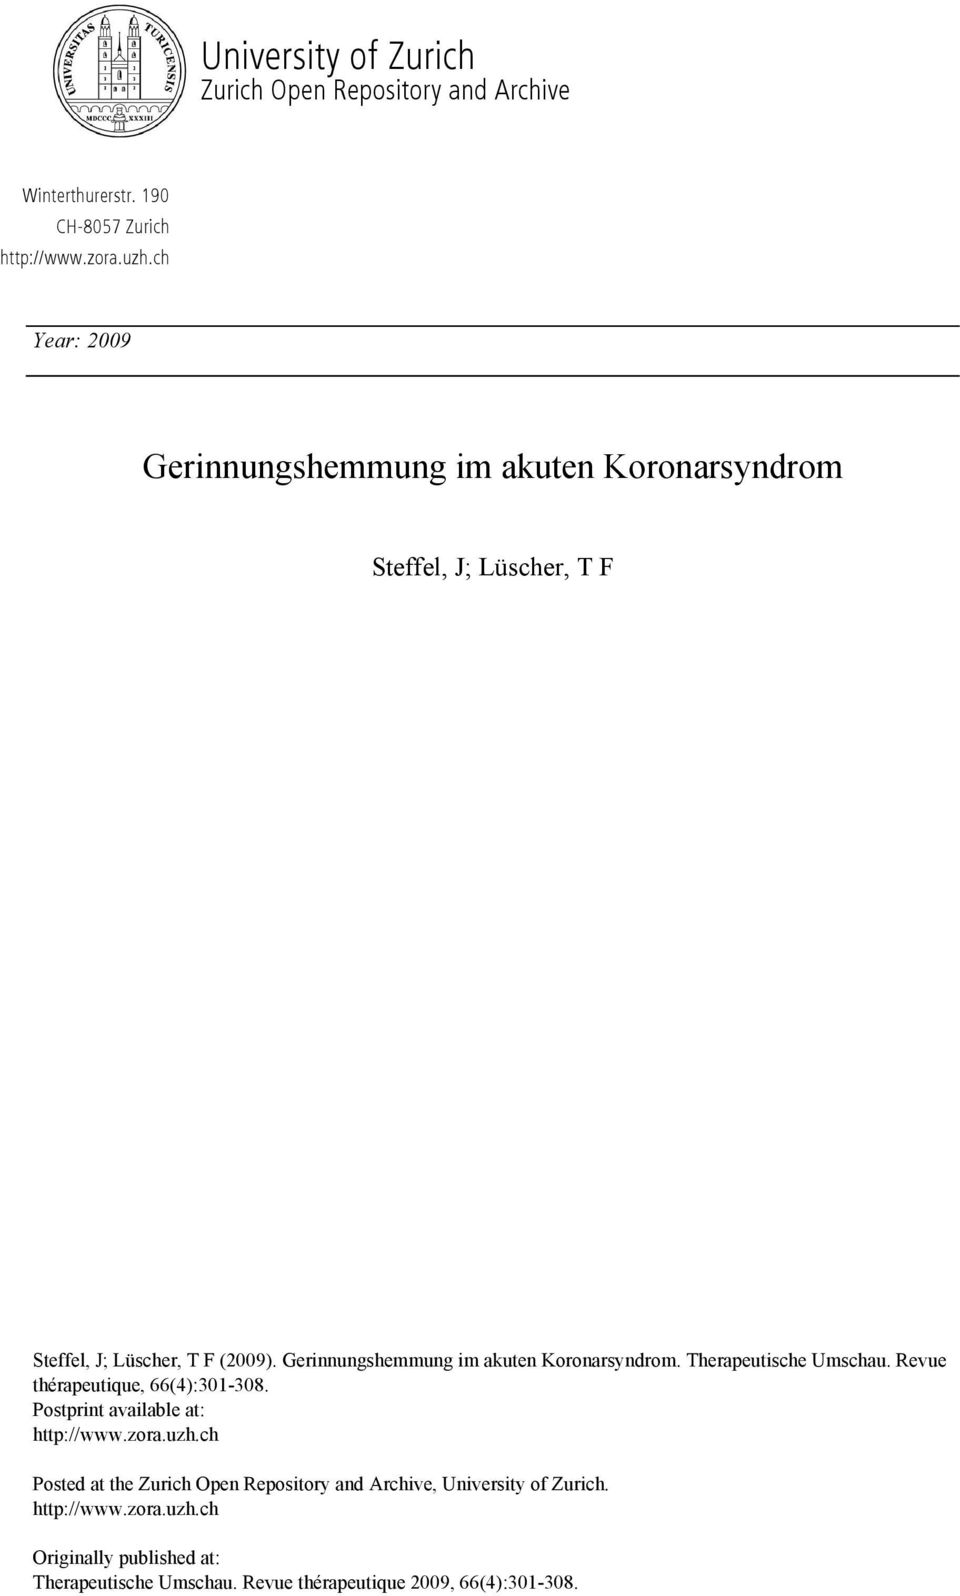 Gerinnungshemmung im akuten Koronarsyndrom. Therapeutische Umschau. Revue thérapeutique, 66(4):301-308. Postprint available at: http://www.